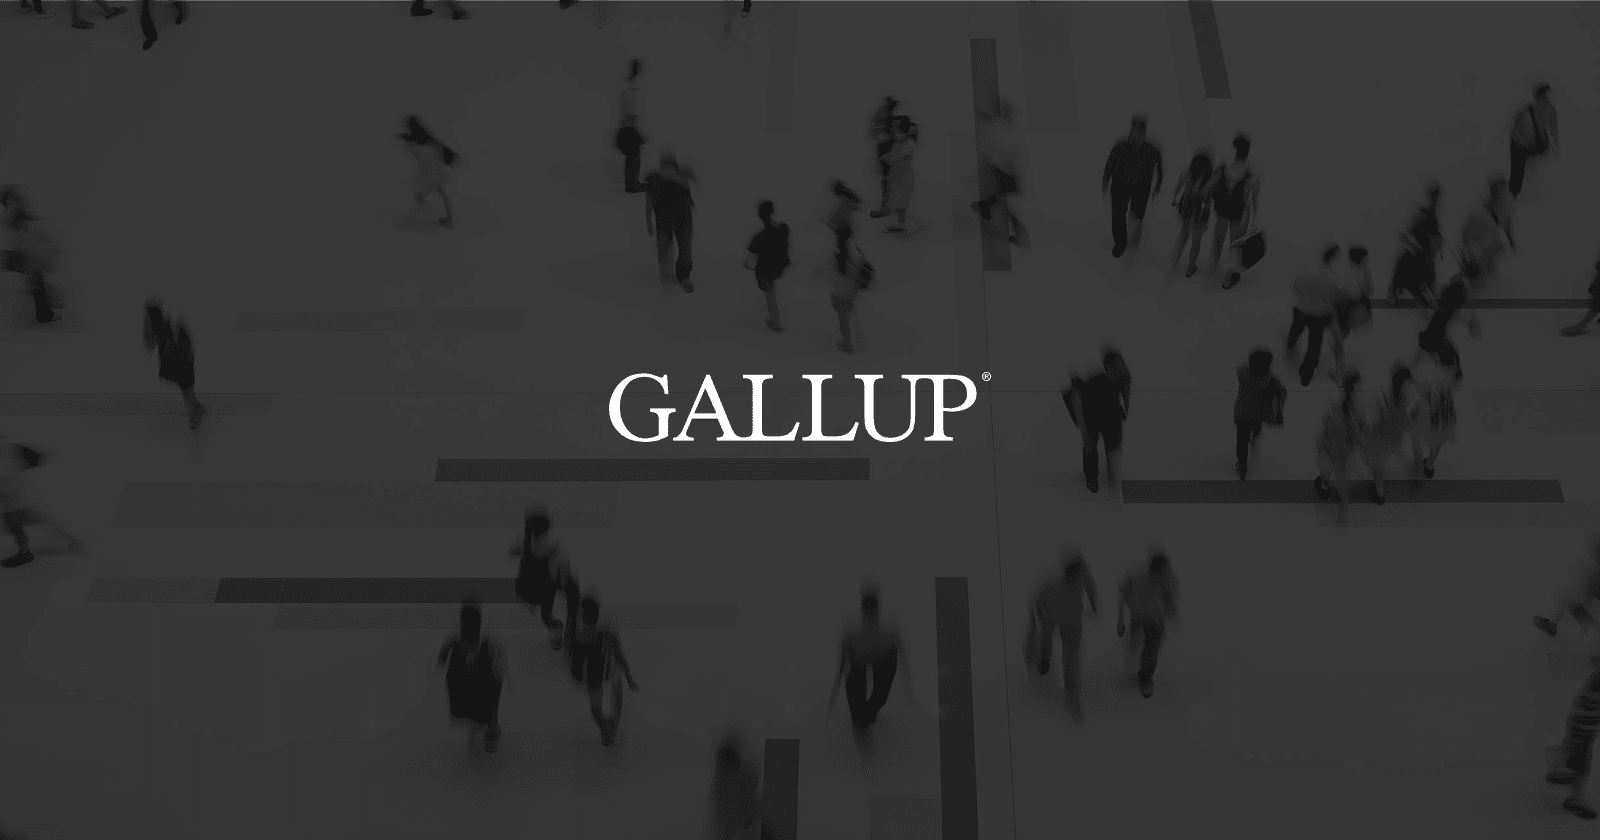 news.gallup.com